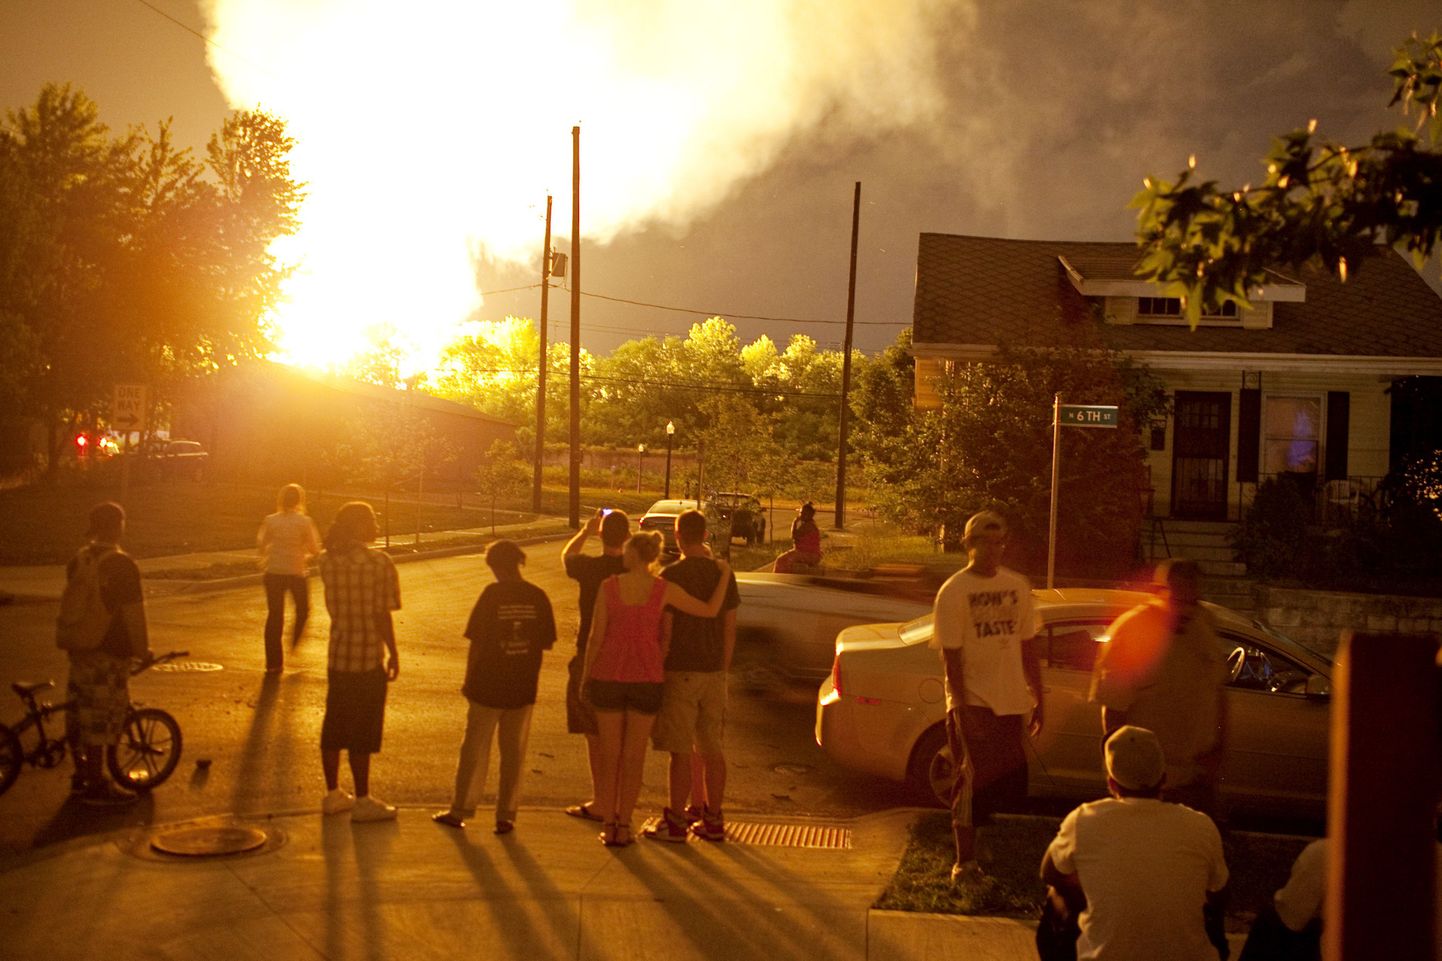 Inimesed vaatavad eemalt rongi plahvatusest tekkinud tulekahju